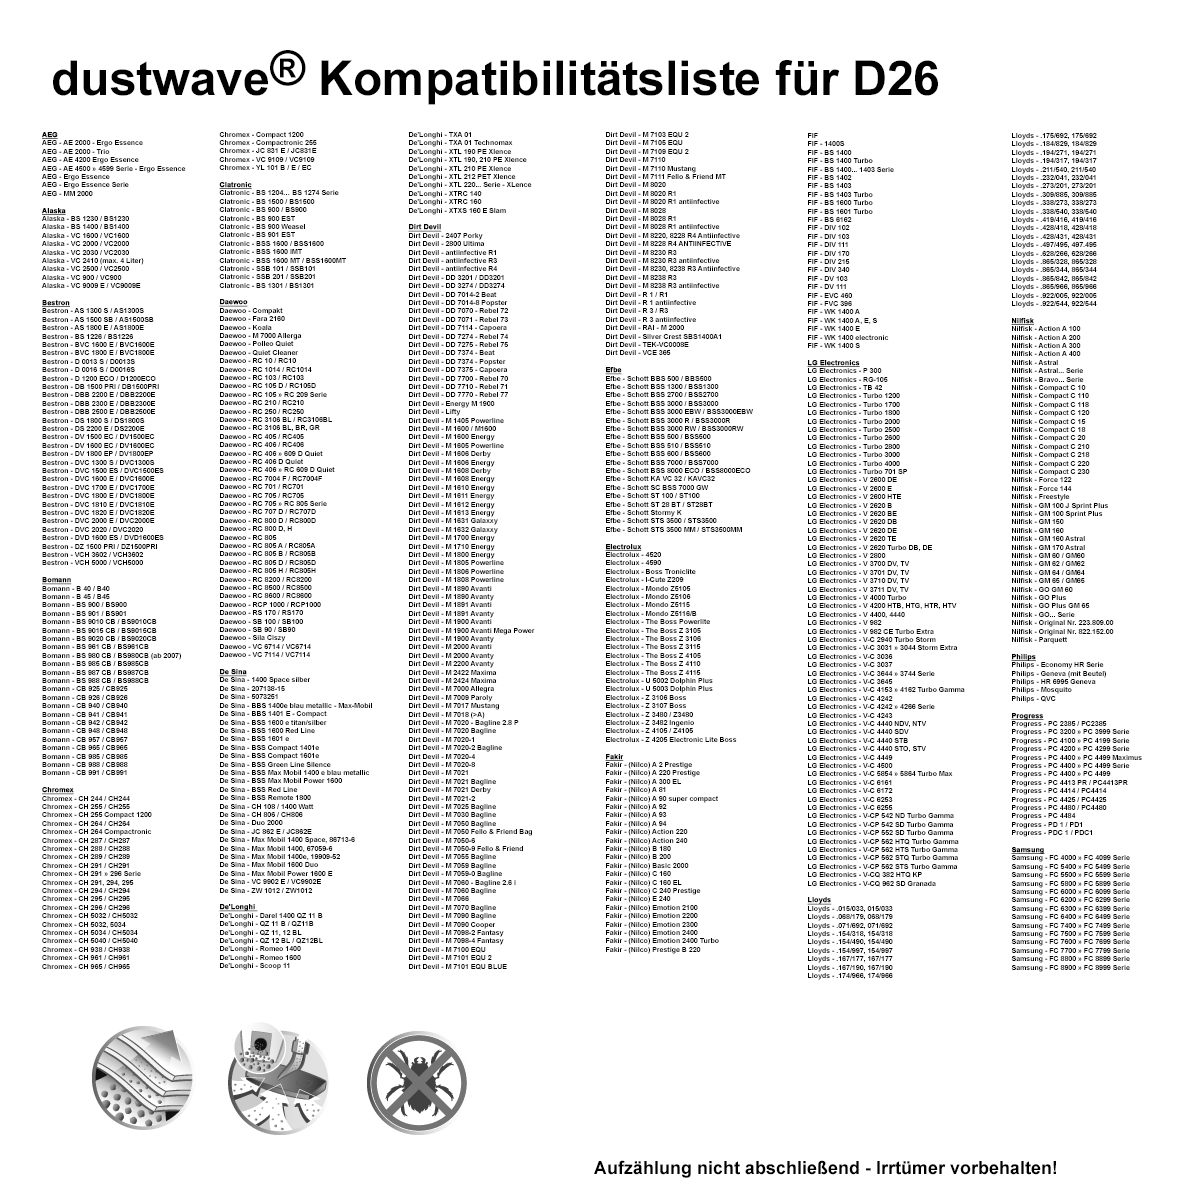 Dustwave® 1 Staubsaugerbeutel für Emerio VE-110452.2 - hocheffizient mit Hygieneverschluss - Made in Germany